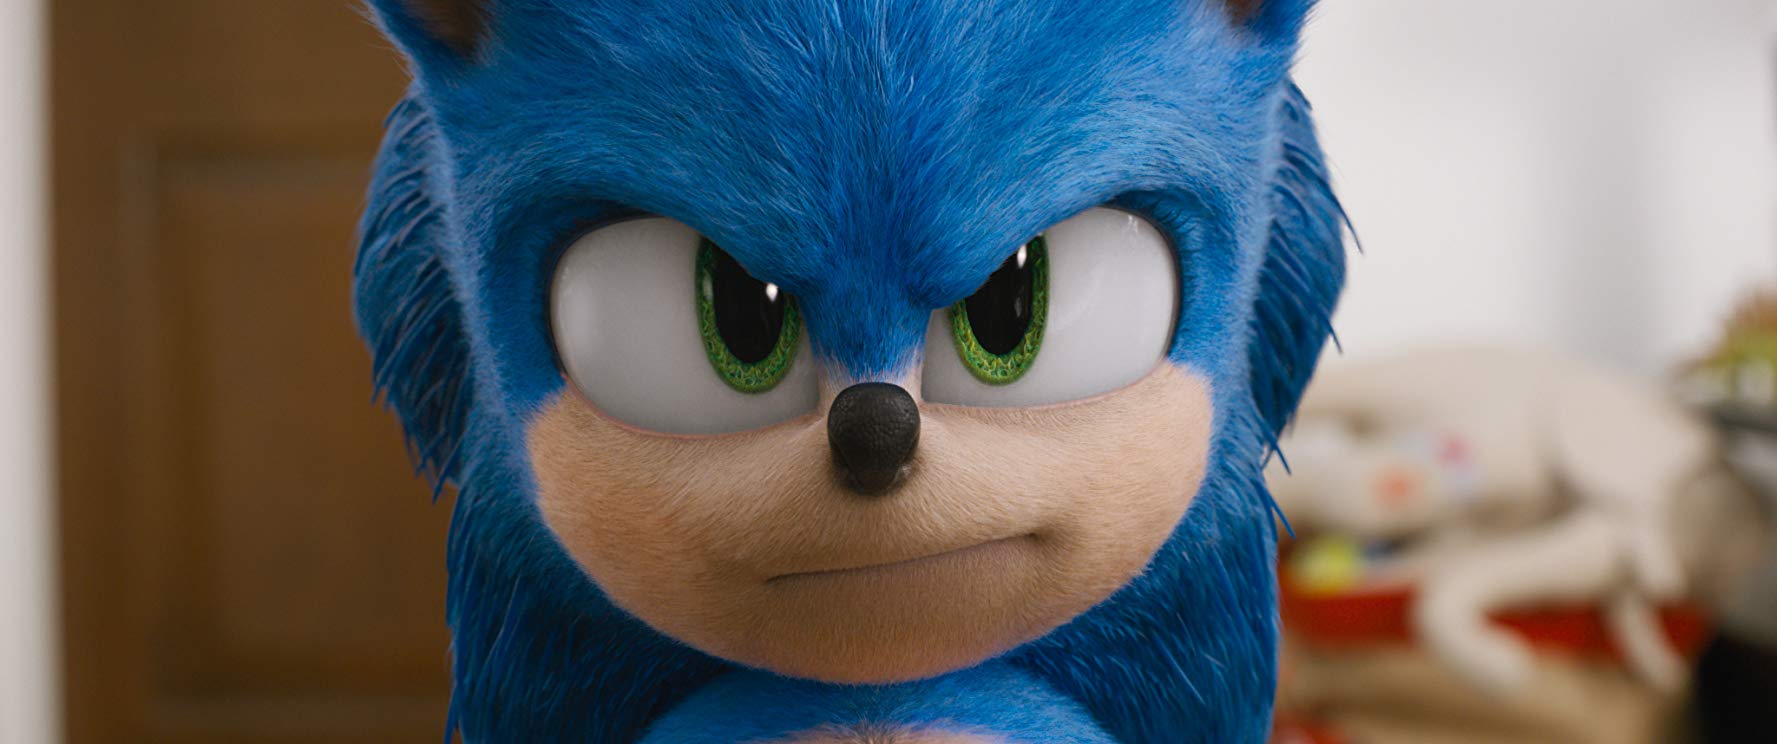 Sonic: O Filme - Bobo, genérico e divertido 22